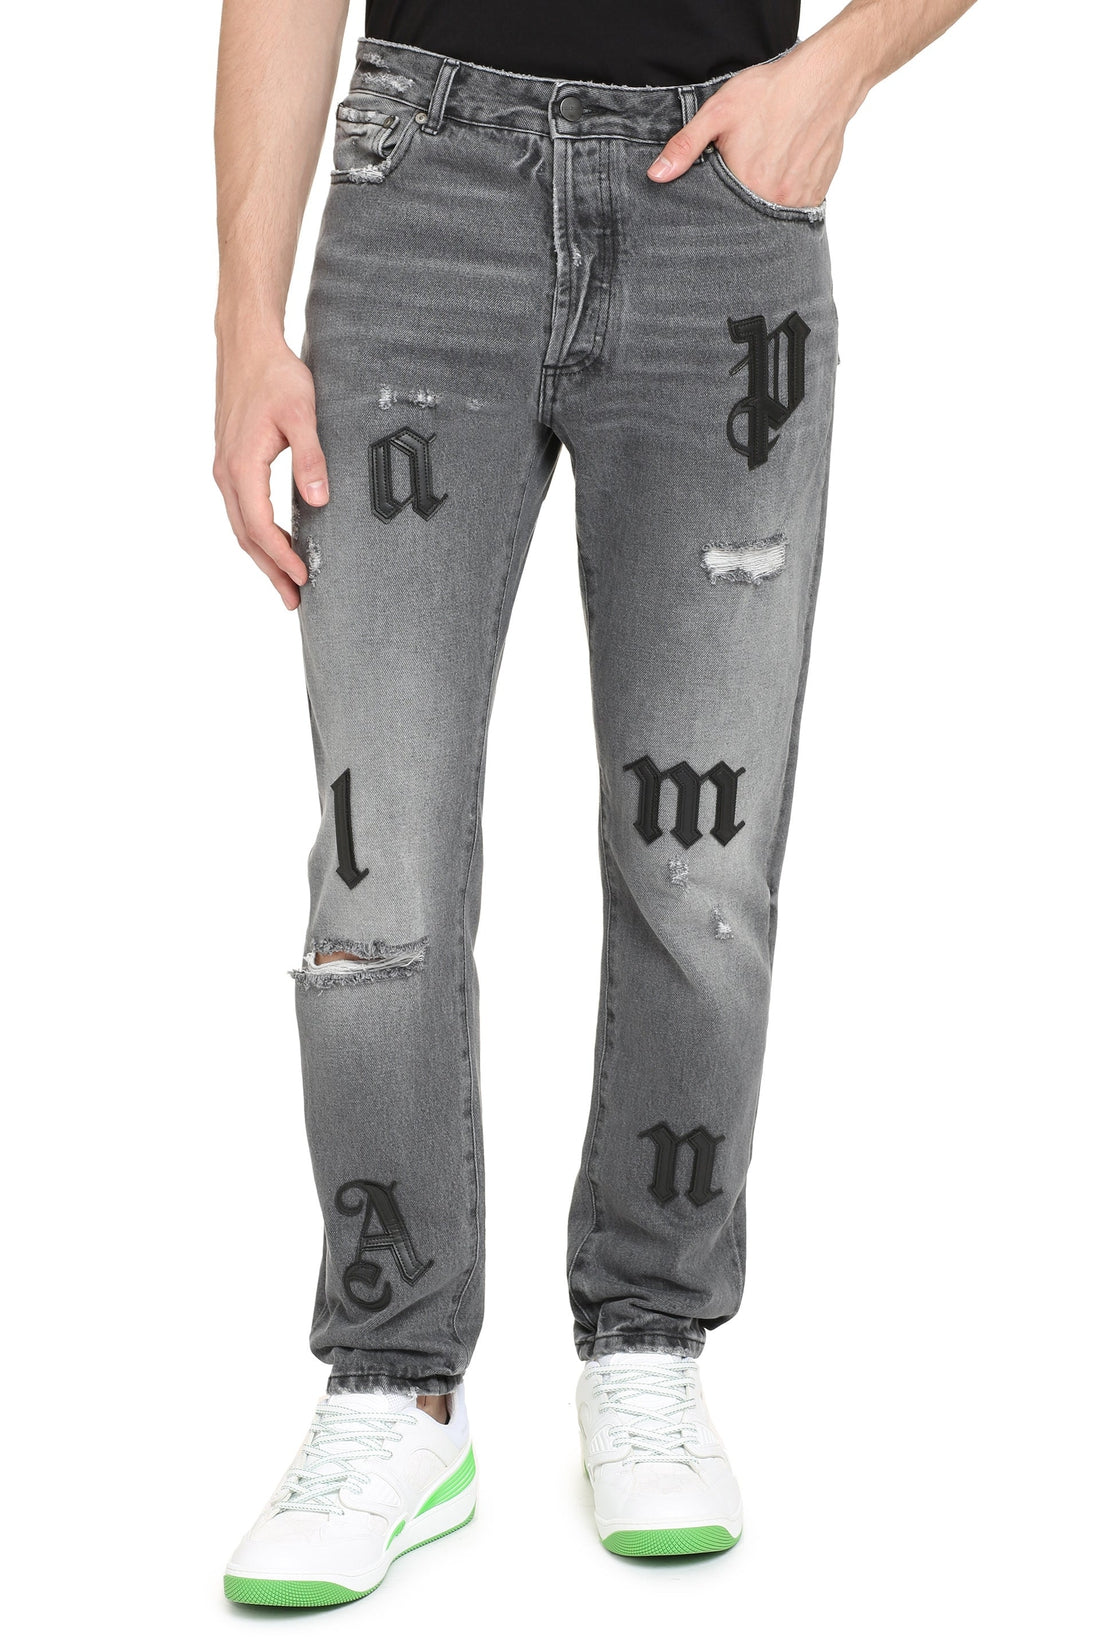 Palm Angels-OUTLET-SALE-5-pocket straight-leg jeans-ARCHIVIST